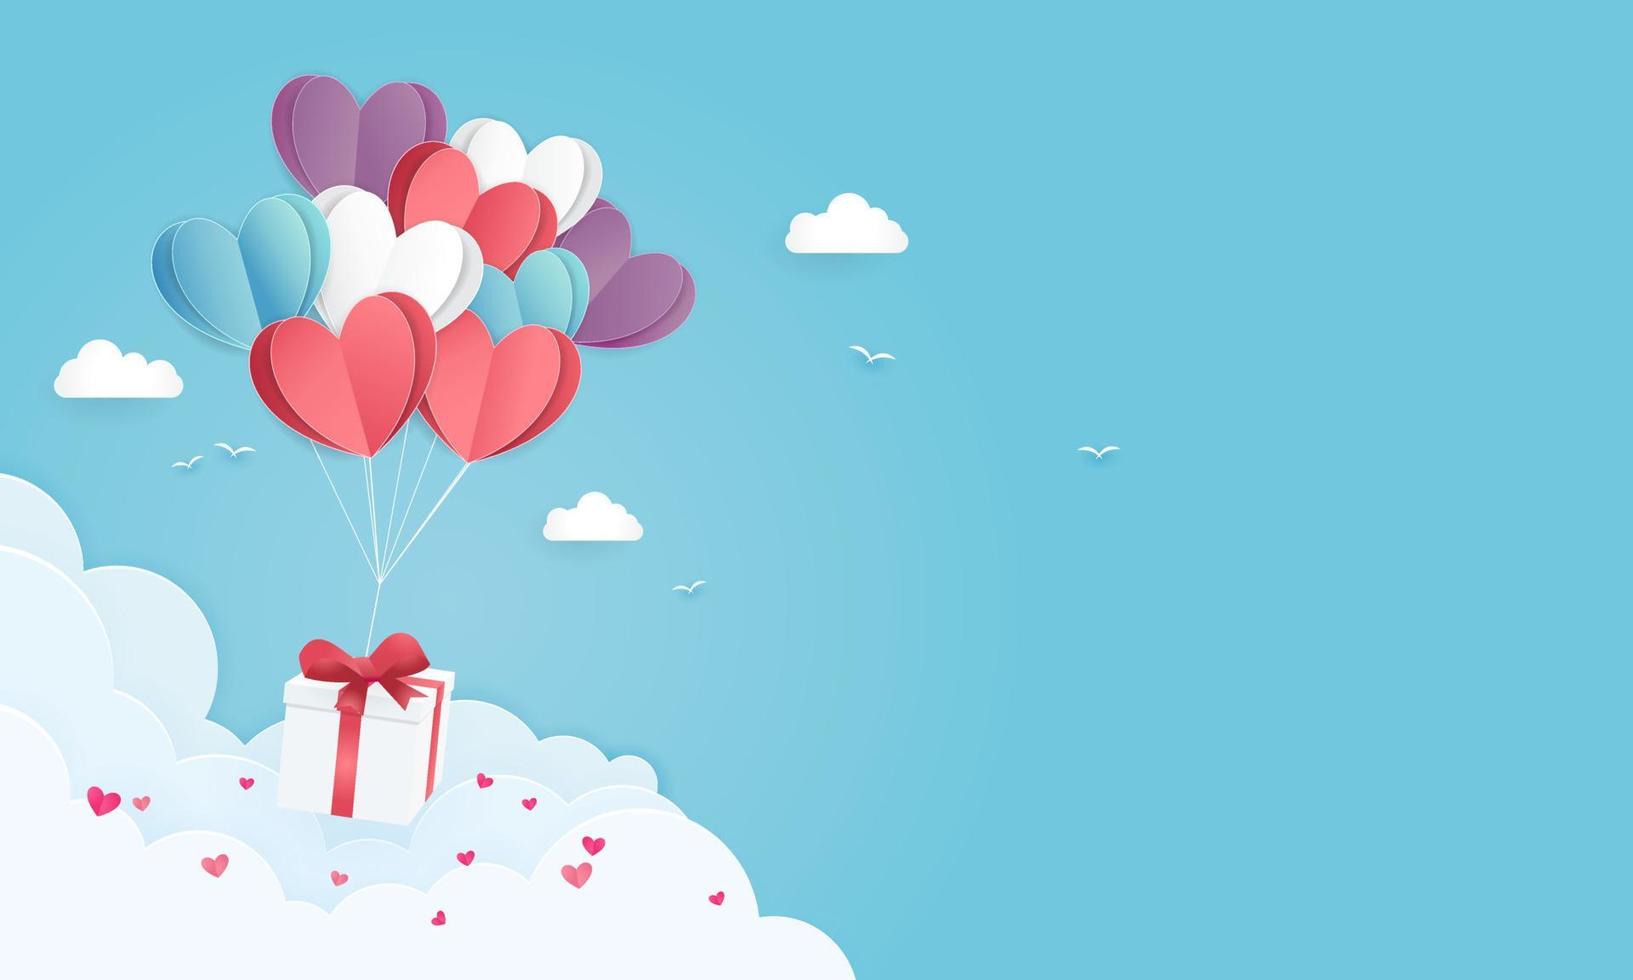 Ilustración del amor y el día de San Valentín con globo de corazón de papel y caja de regalo flotando en el cielo azul. se puede utilizar para papel tapiz, folletos, invitaciones, carteles, pancartas. estilo de corte de papel. vector